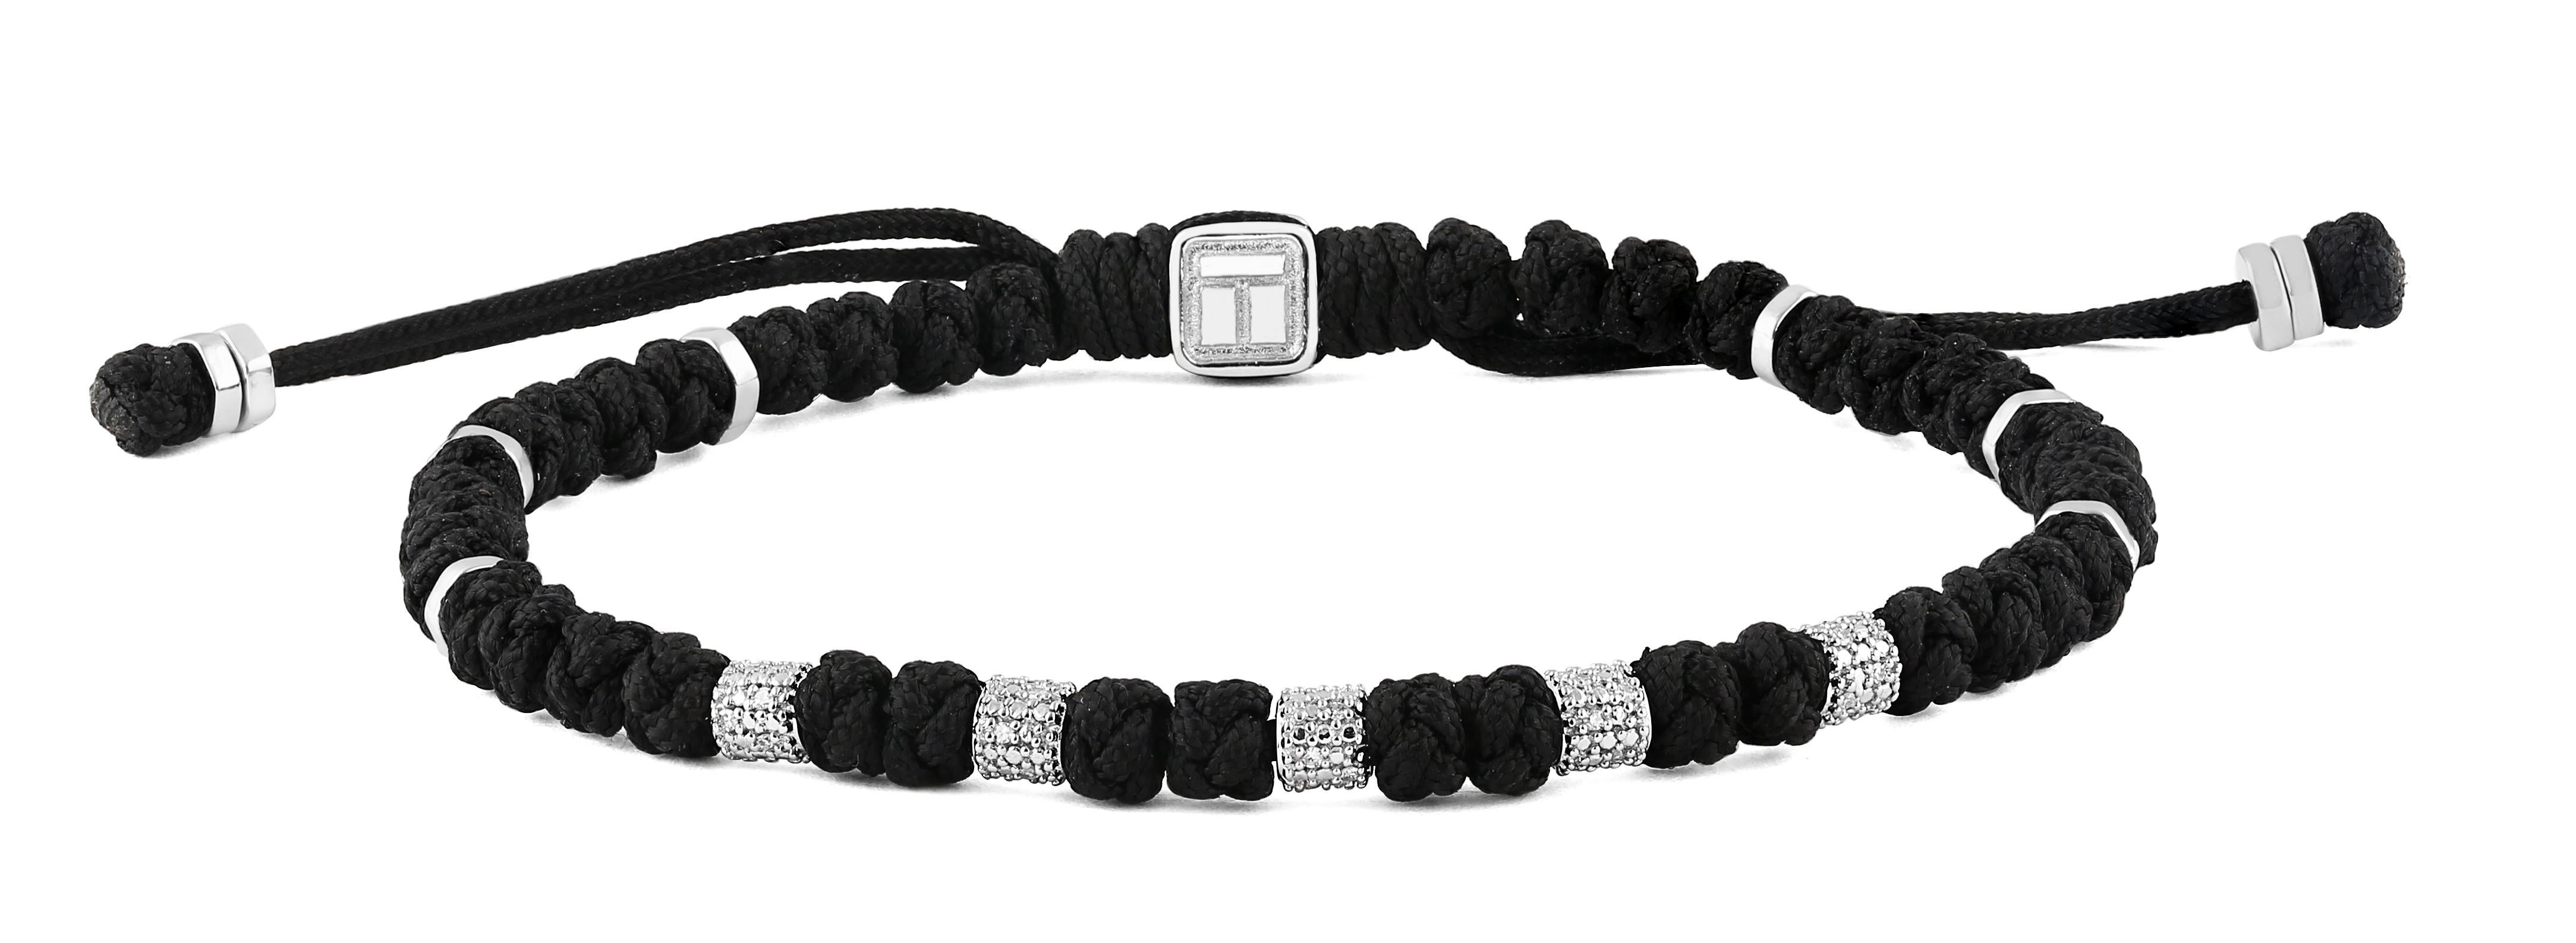 Ce bracelet macramé utilise des nœuds chinois tissés de manière complexe à partir d'un seul fil pour créer des nœuds semblables à des perles, espacés par des perles pavées de diamants blancs formant un élément de mise en valeur sur le devant. Ce